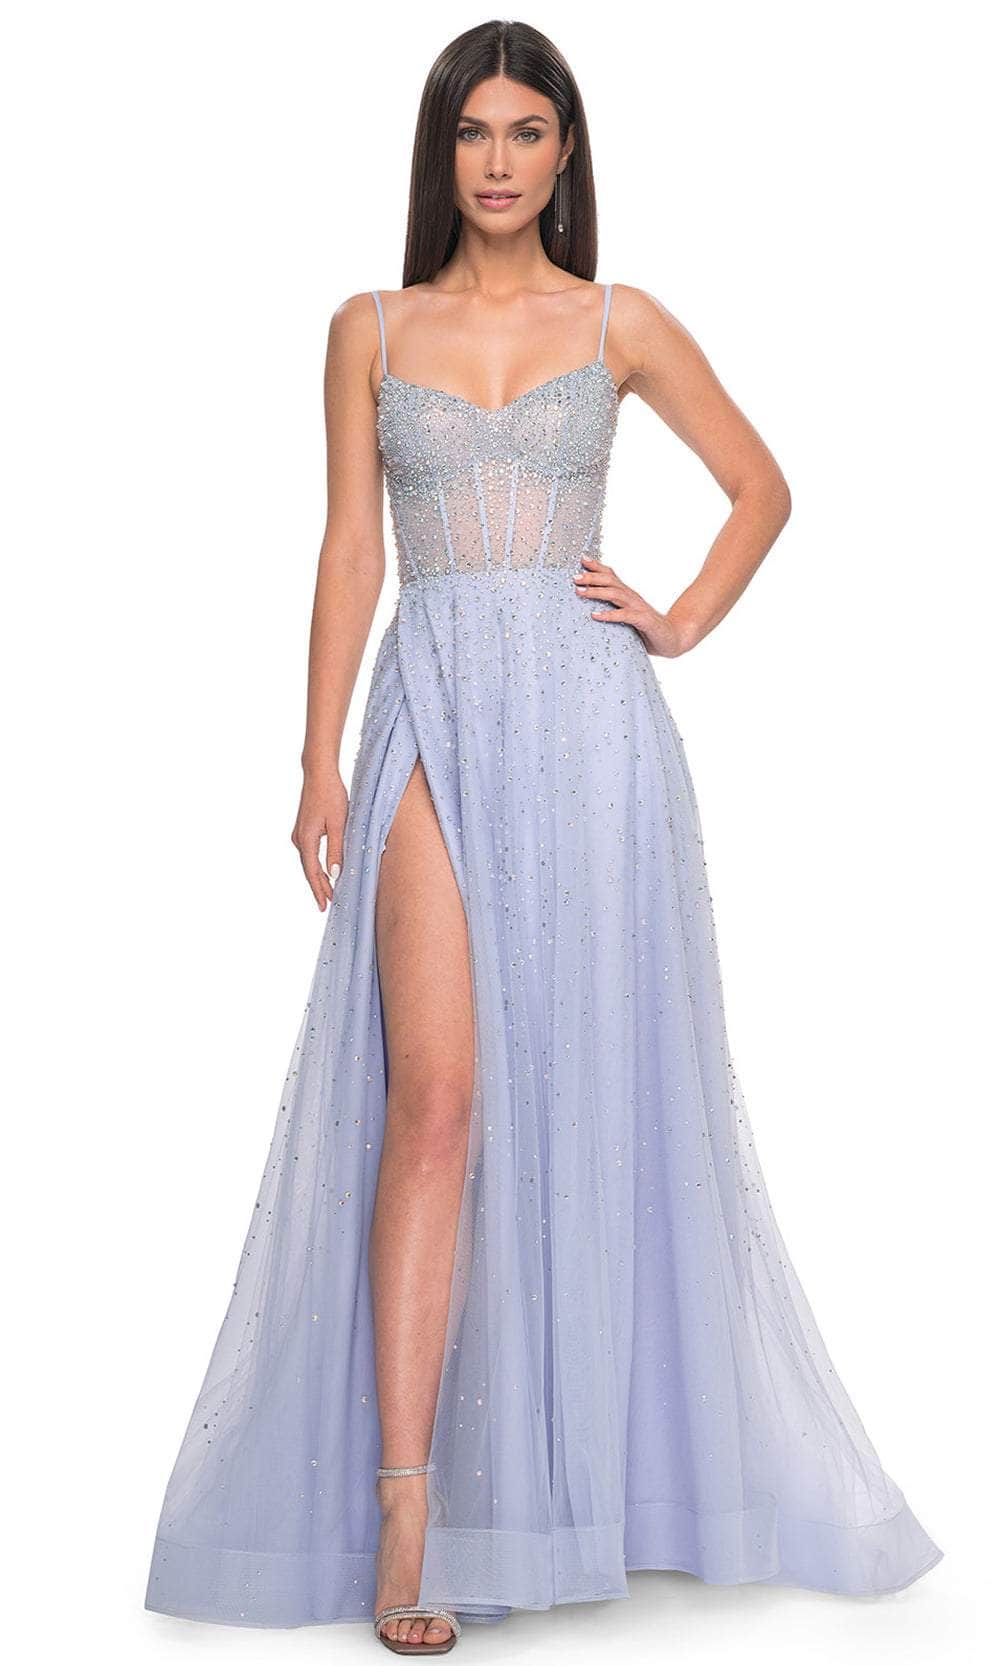 La Femme 32146 - Embellished A-Line Prom Dress
